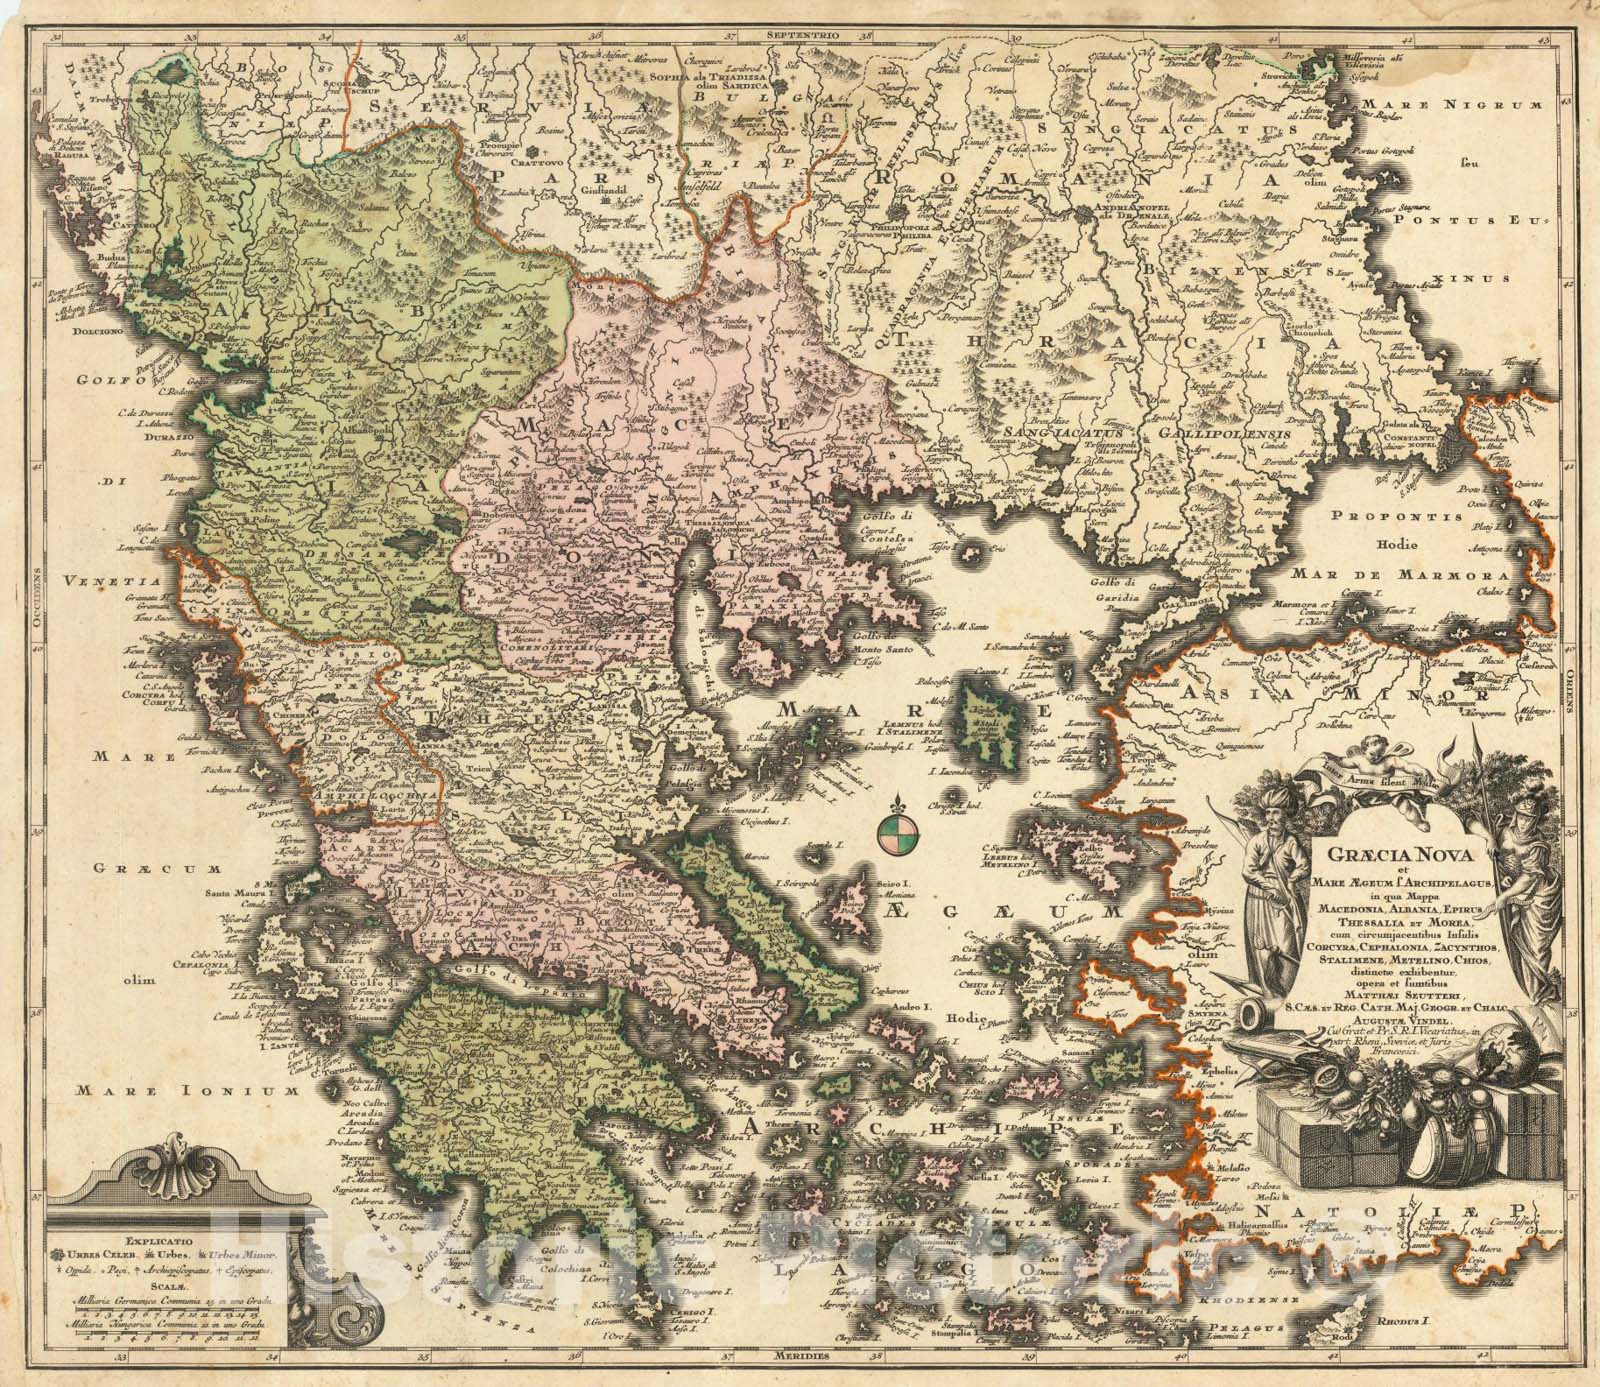 Historic Map : Graecia Nova et Mare Aegeum f. Archipelagus in qua Mappa Macedonia, Albania, Epirus, c1740, Abraham Ortelius, Vintage Wall Art